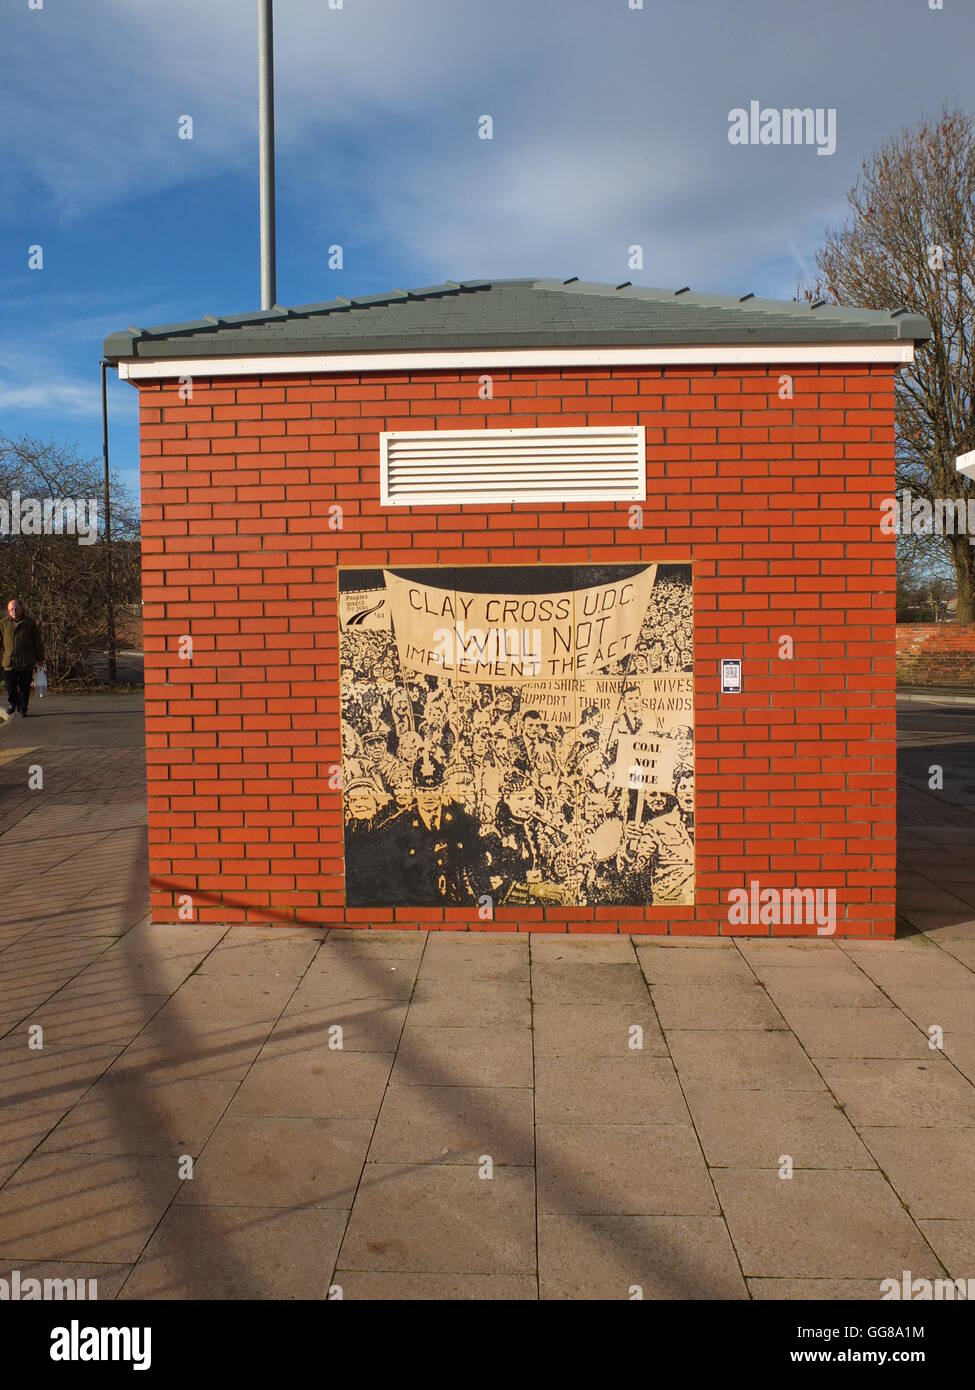 Ein Wandbild auf ein Umspannwerk in Clay Cross, Derbyshire, Darstellung der Stadt Beteiligung an linker Politik. Stockfoto